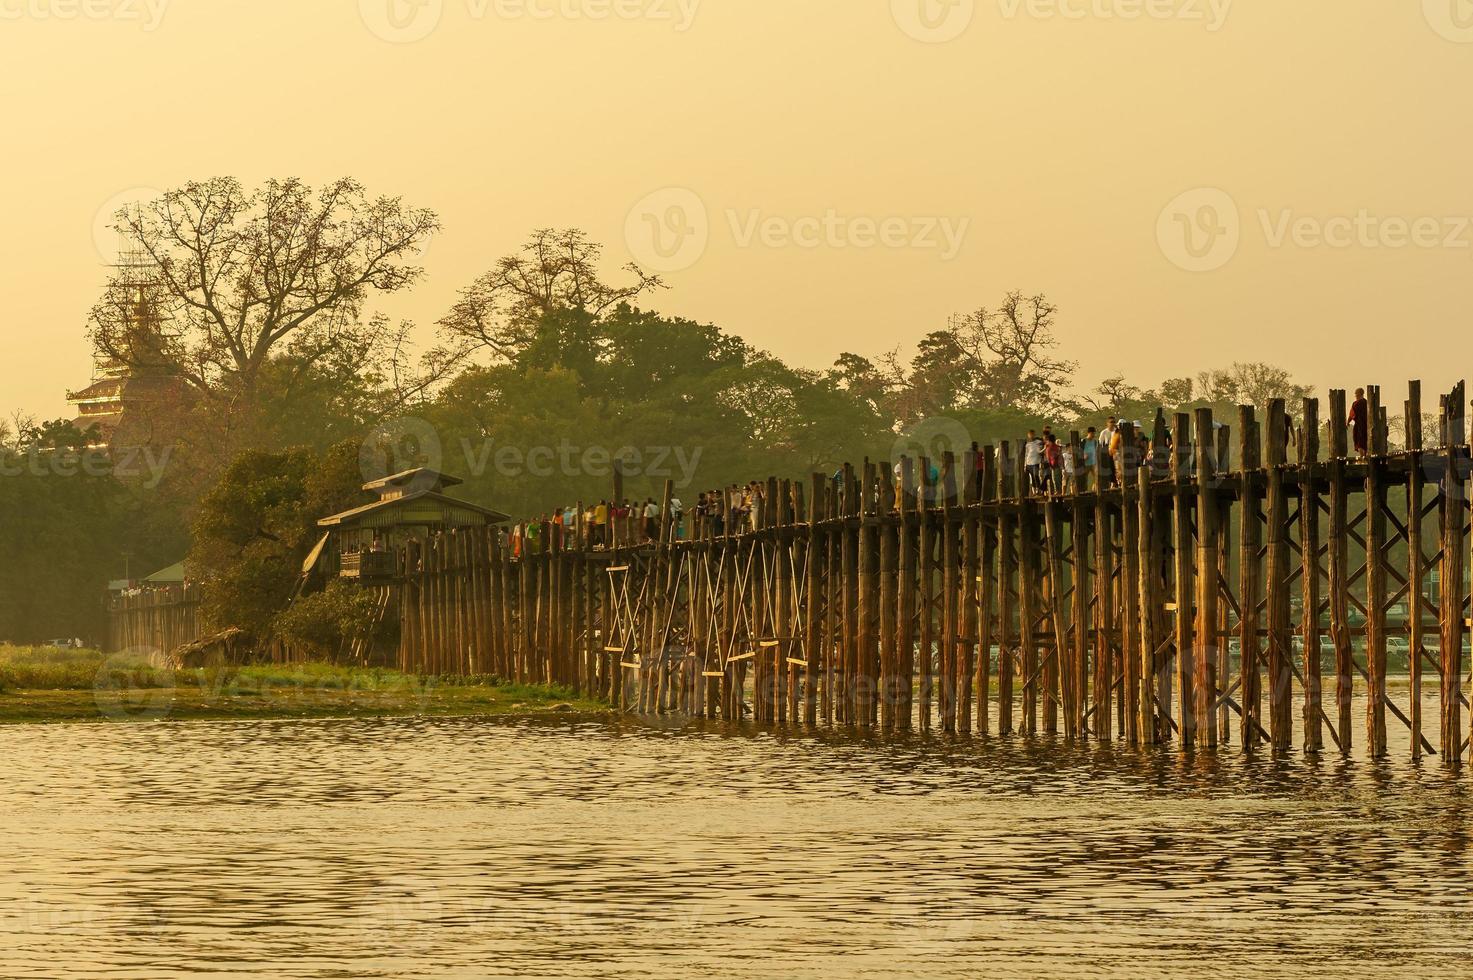 coucher de soleil avec le pont u bein au myanmar en birmanie photo